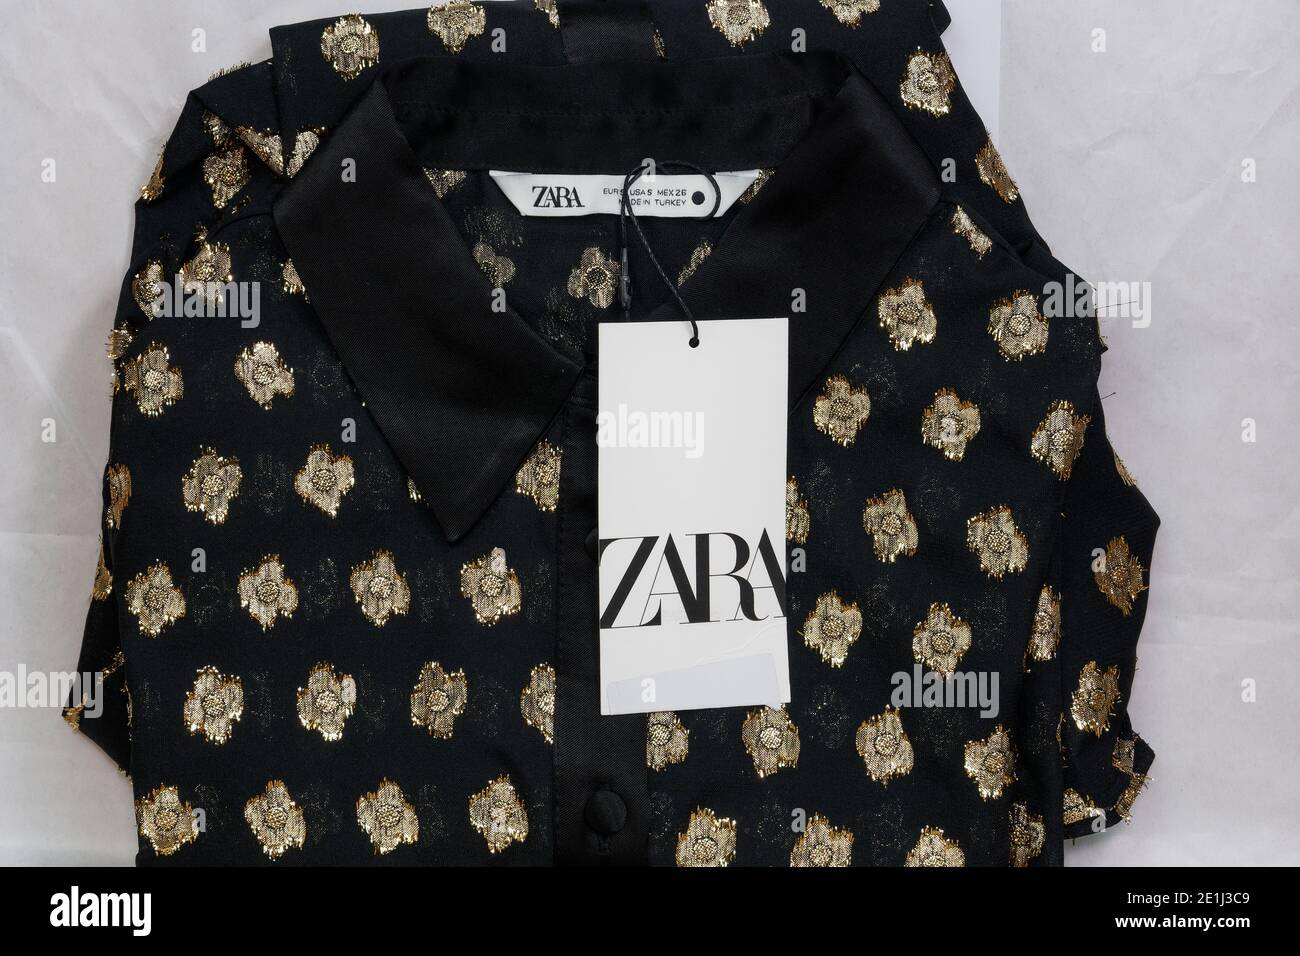 Zara abbigliamento spagnolo marca online consegna. Ordinare la confezione  contenente la camicia ripiegata del rivenditore Inditex con il logo  dell'azienda Foto stock - Alamy